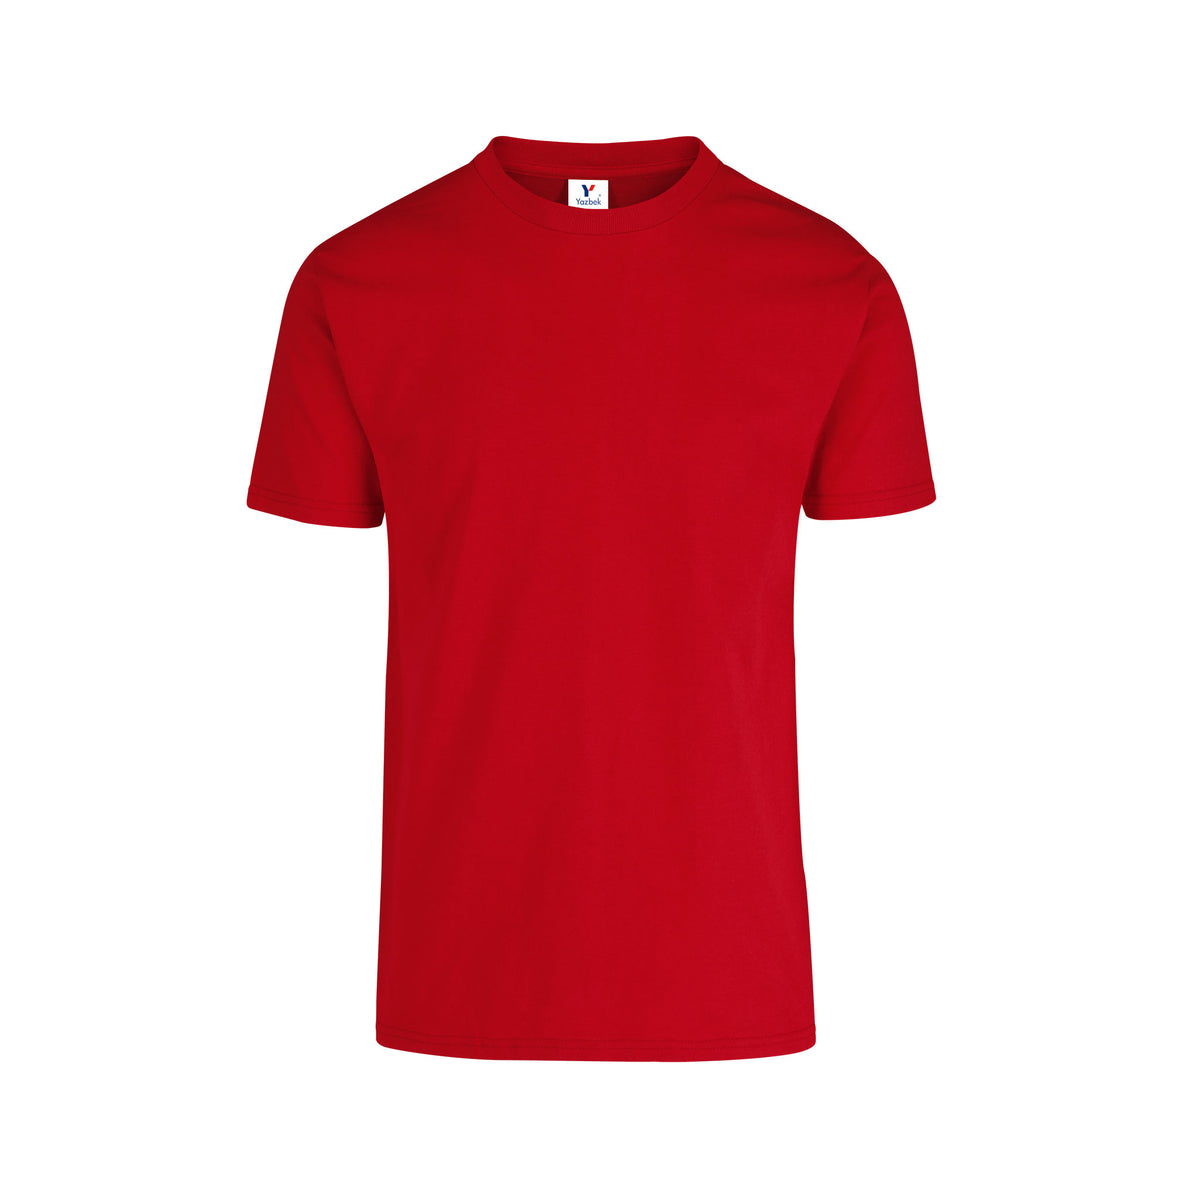 Men's Crew Neck Short Sleeve T-Shirt (Red) – Yazbek USA Mint